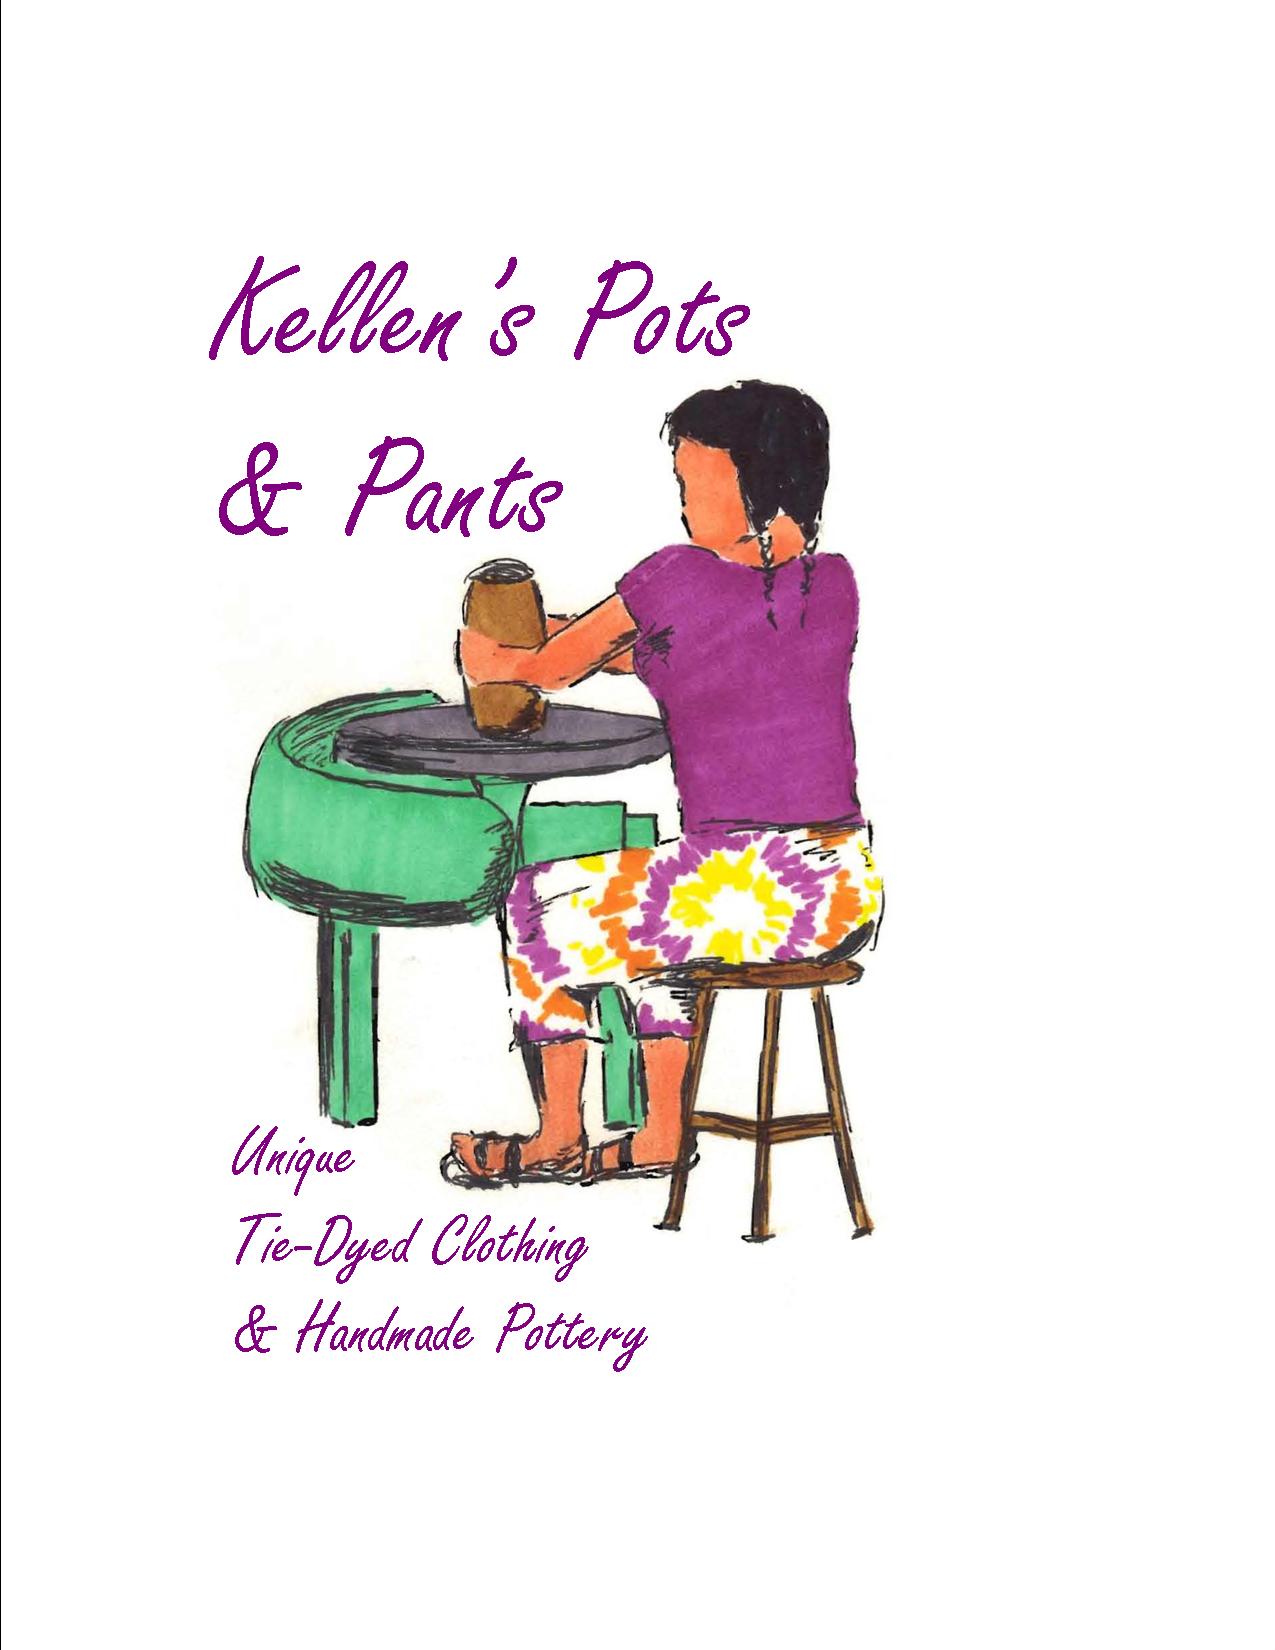 Kellens Pots and Pants